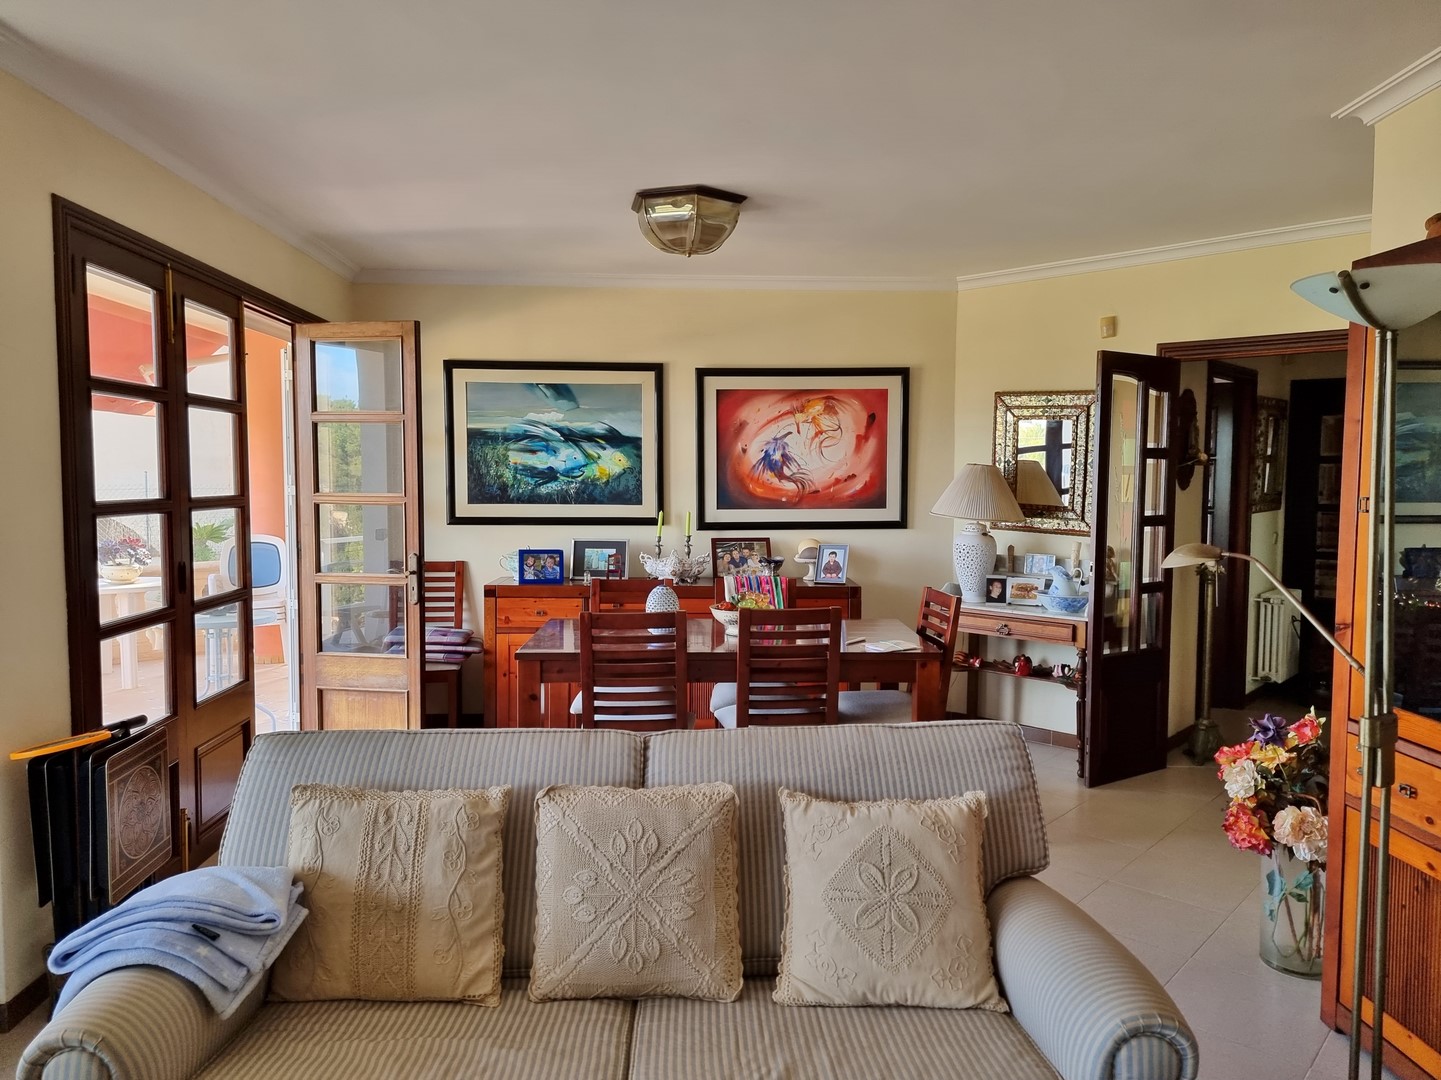 CALA MANDIA: Strandnahe Meerblick-Villa mit viel Privatsphäre, gehobener Ausstattung und guter Anbindung